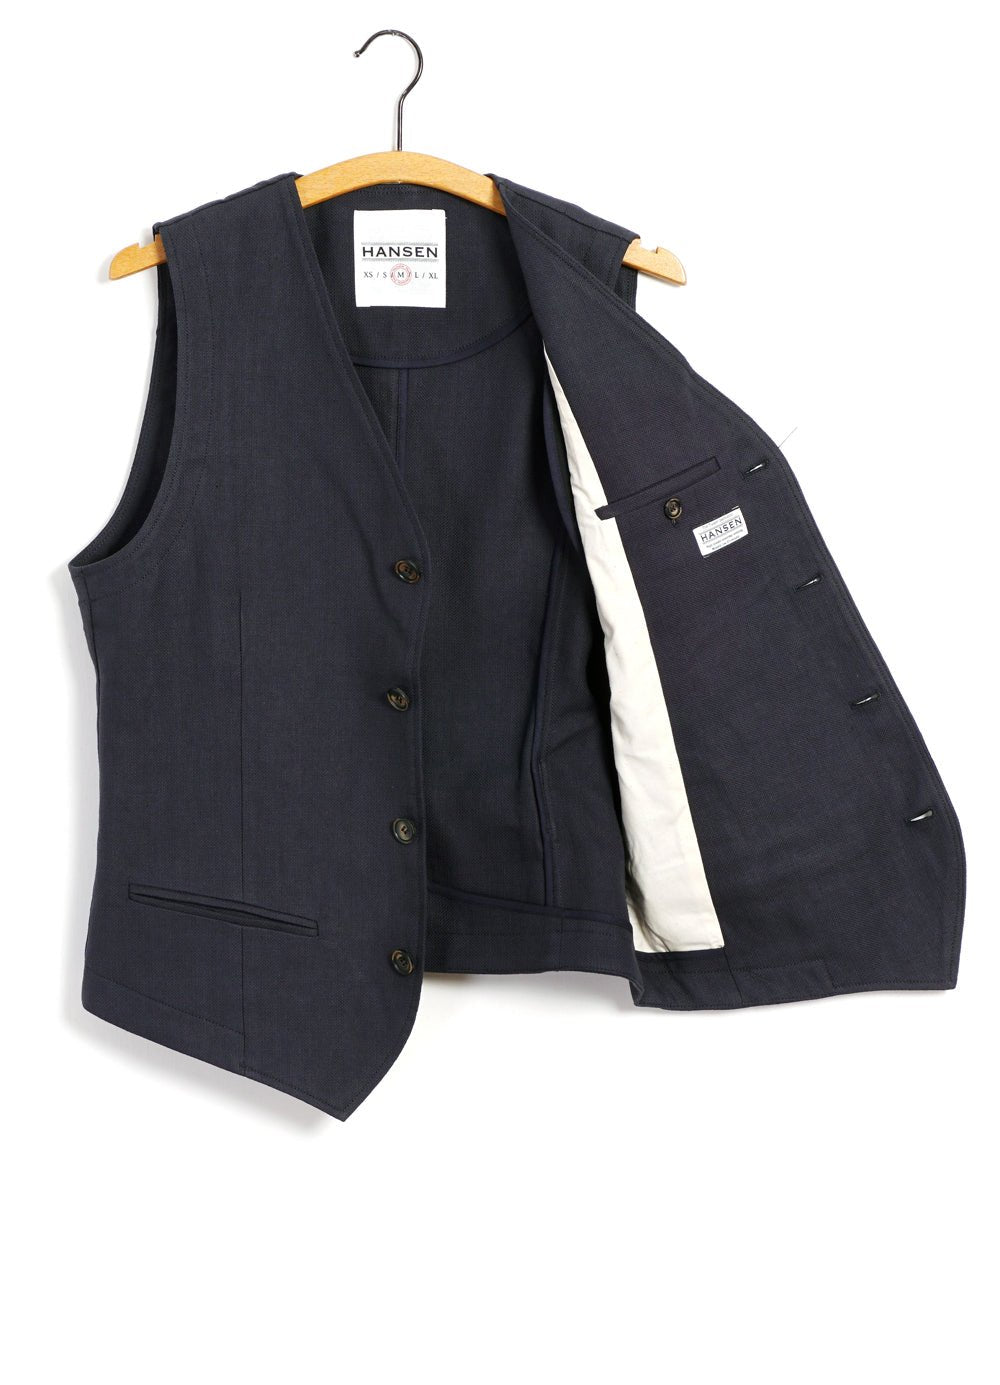 HANSEN GARMENTS - DANIEL | Classic Waistcoat | Dark Blue - HANSEN Garments